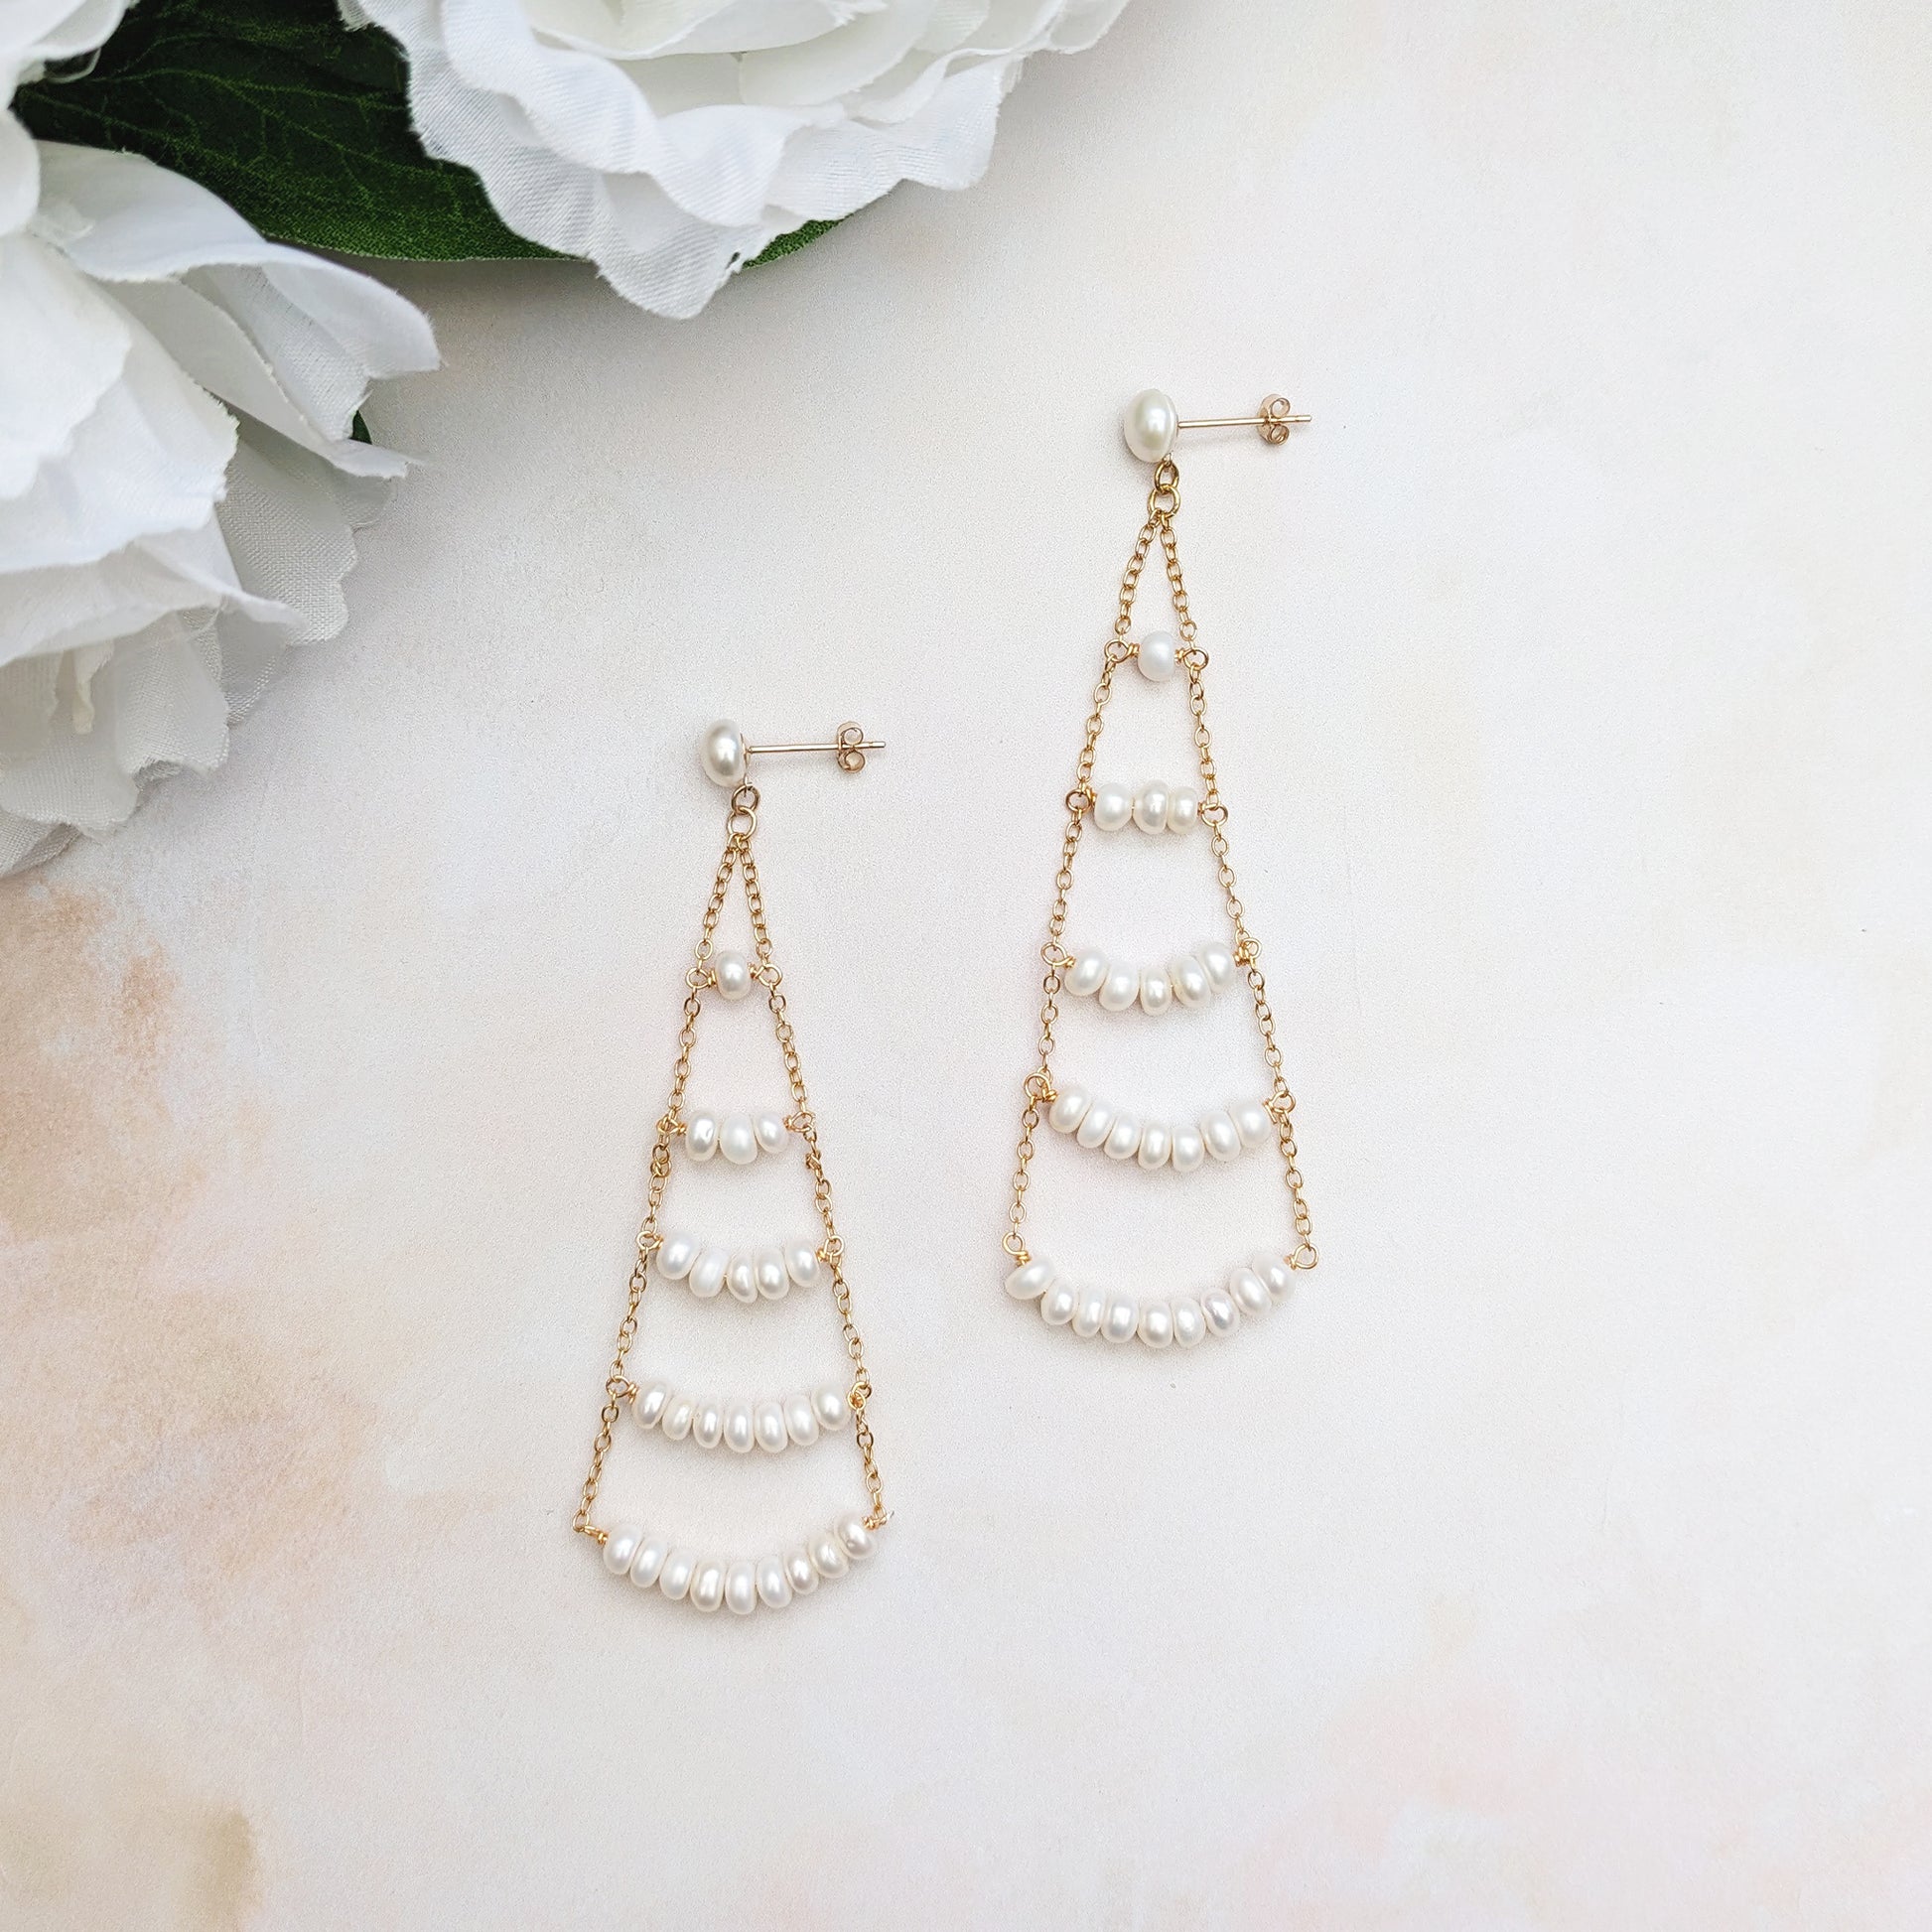 Pearl chandelier statement wedding earrings - Susie Warner